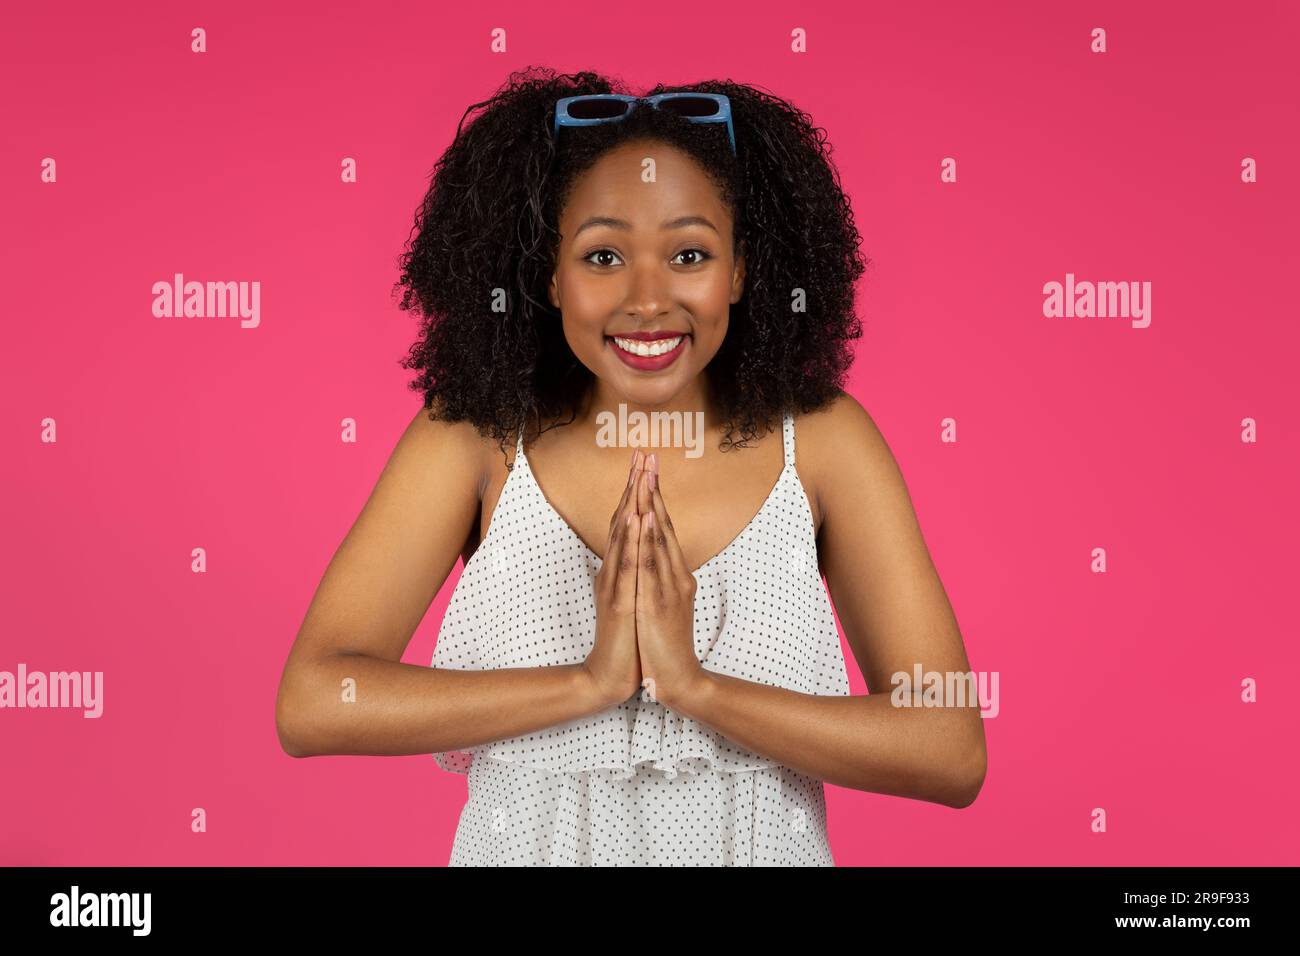 Souriante excitée jeune femme noire du millénaire étudiant faisant le geste de prière, se réjouir, merci et demander Banque D'Images